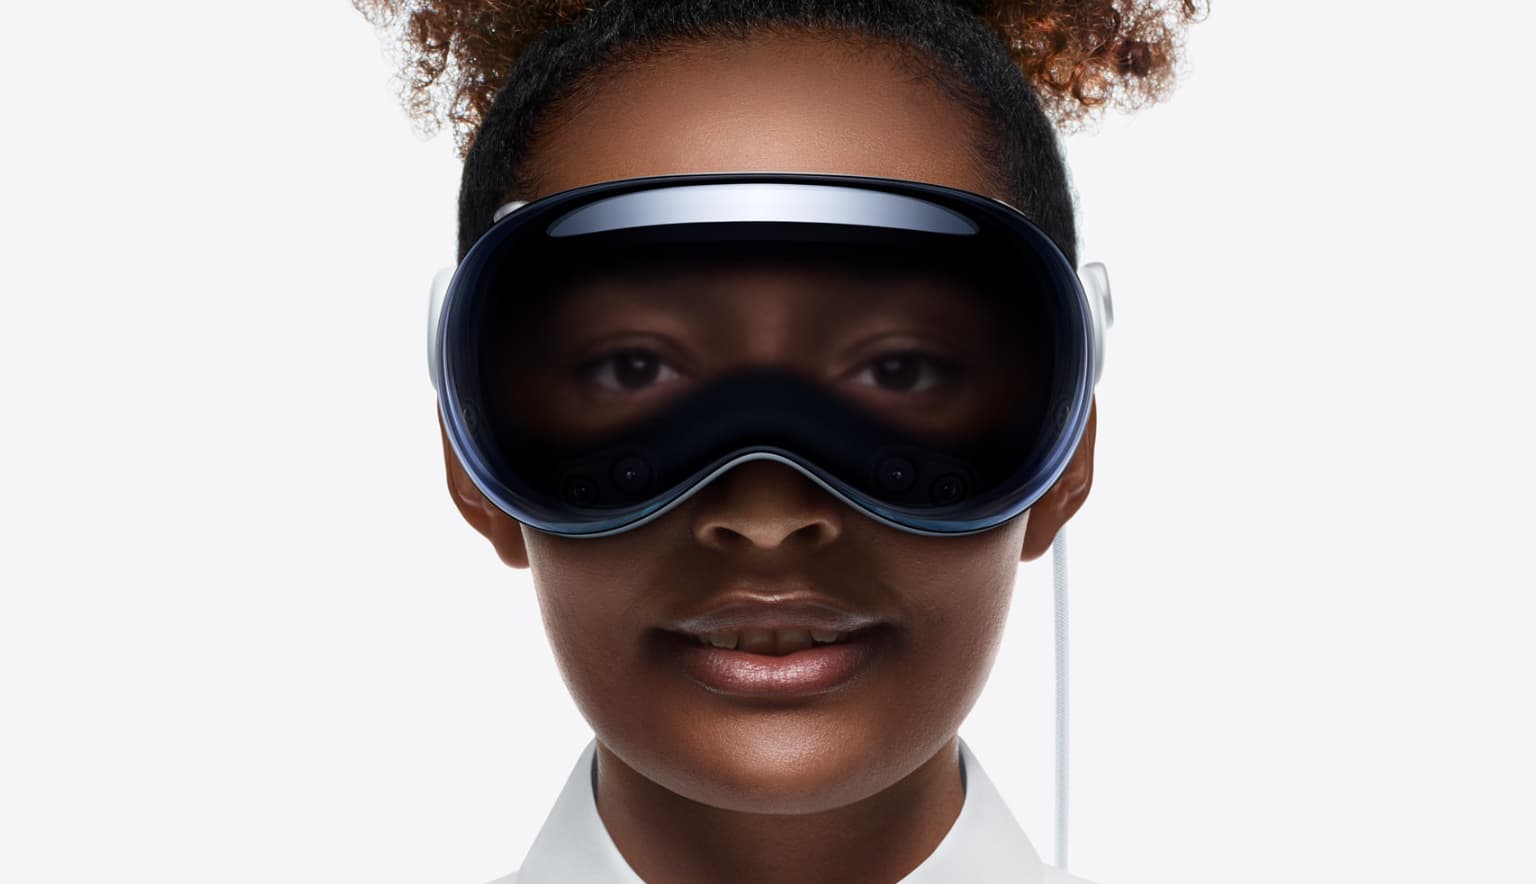 vision pro: apple lance son casque de réalité mixte à 3.500 dollars ce vendredi aux états-unis